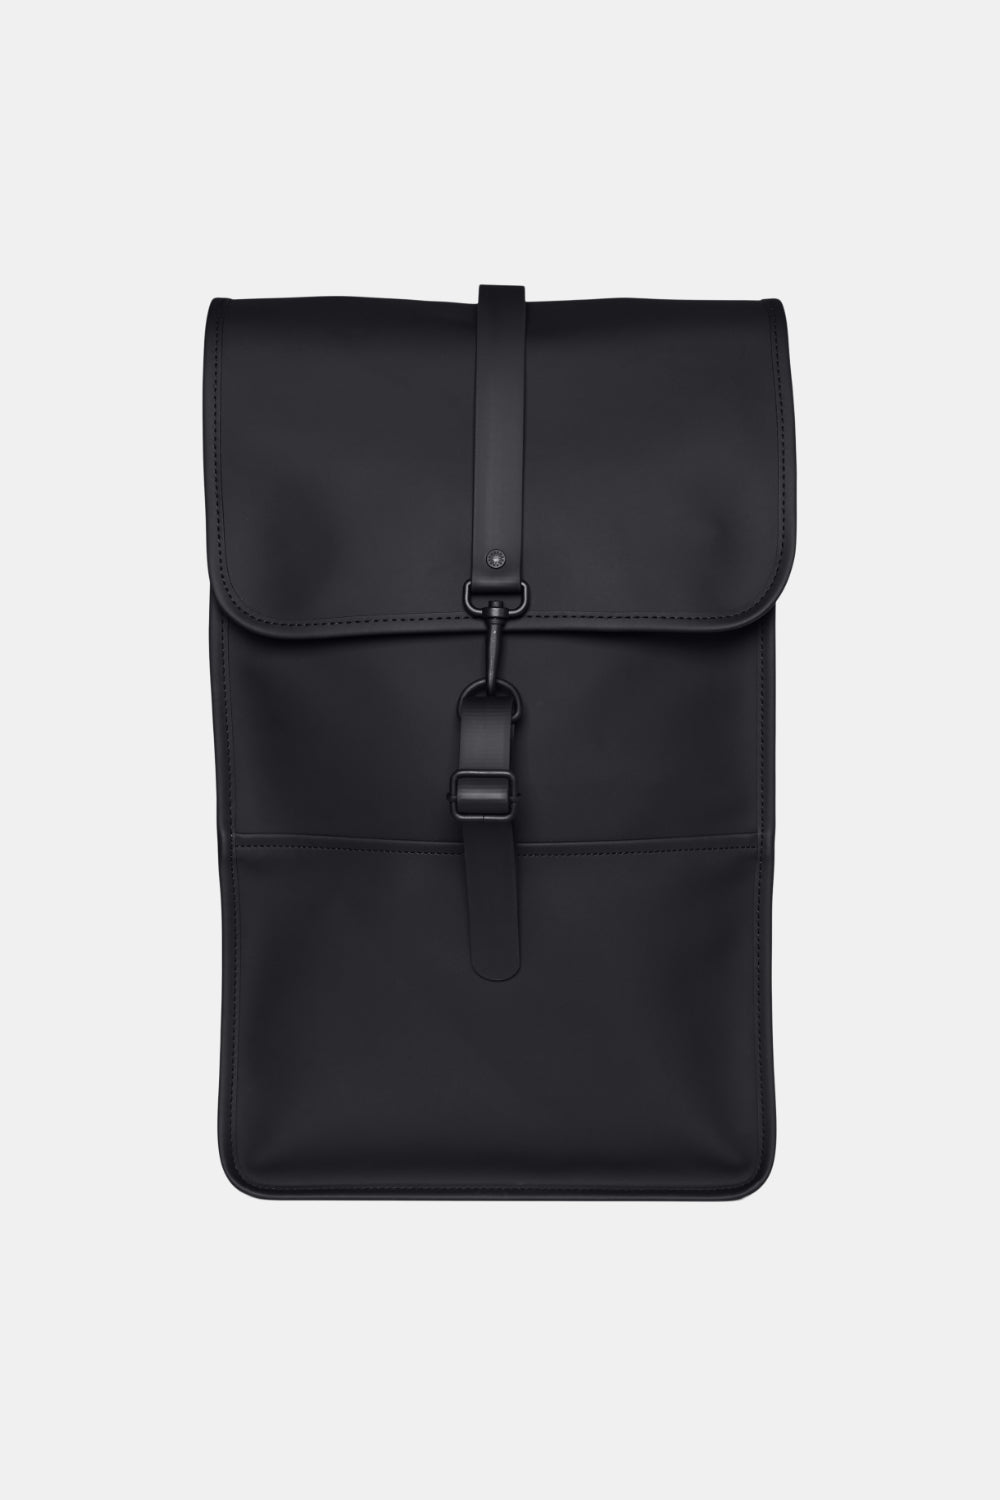 Rains Waterproof Backpack W3 (Black)